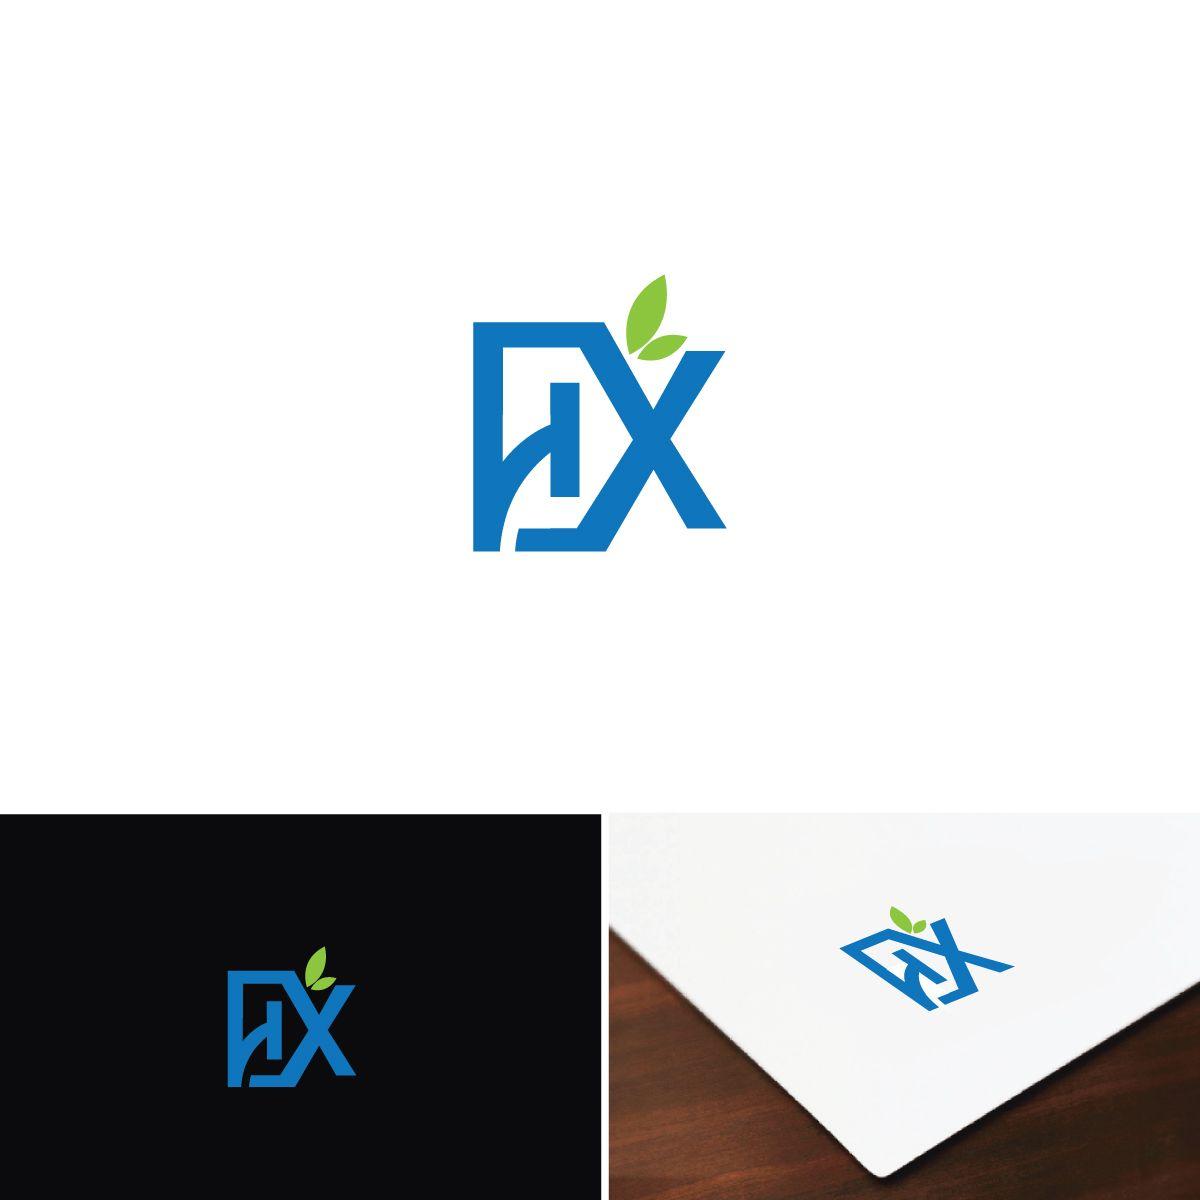 Hx Logo - Bold, Modern, Healthcare Logo Design for HX by e-graphics | Design ...